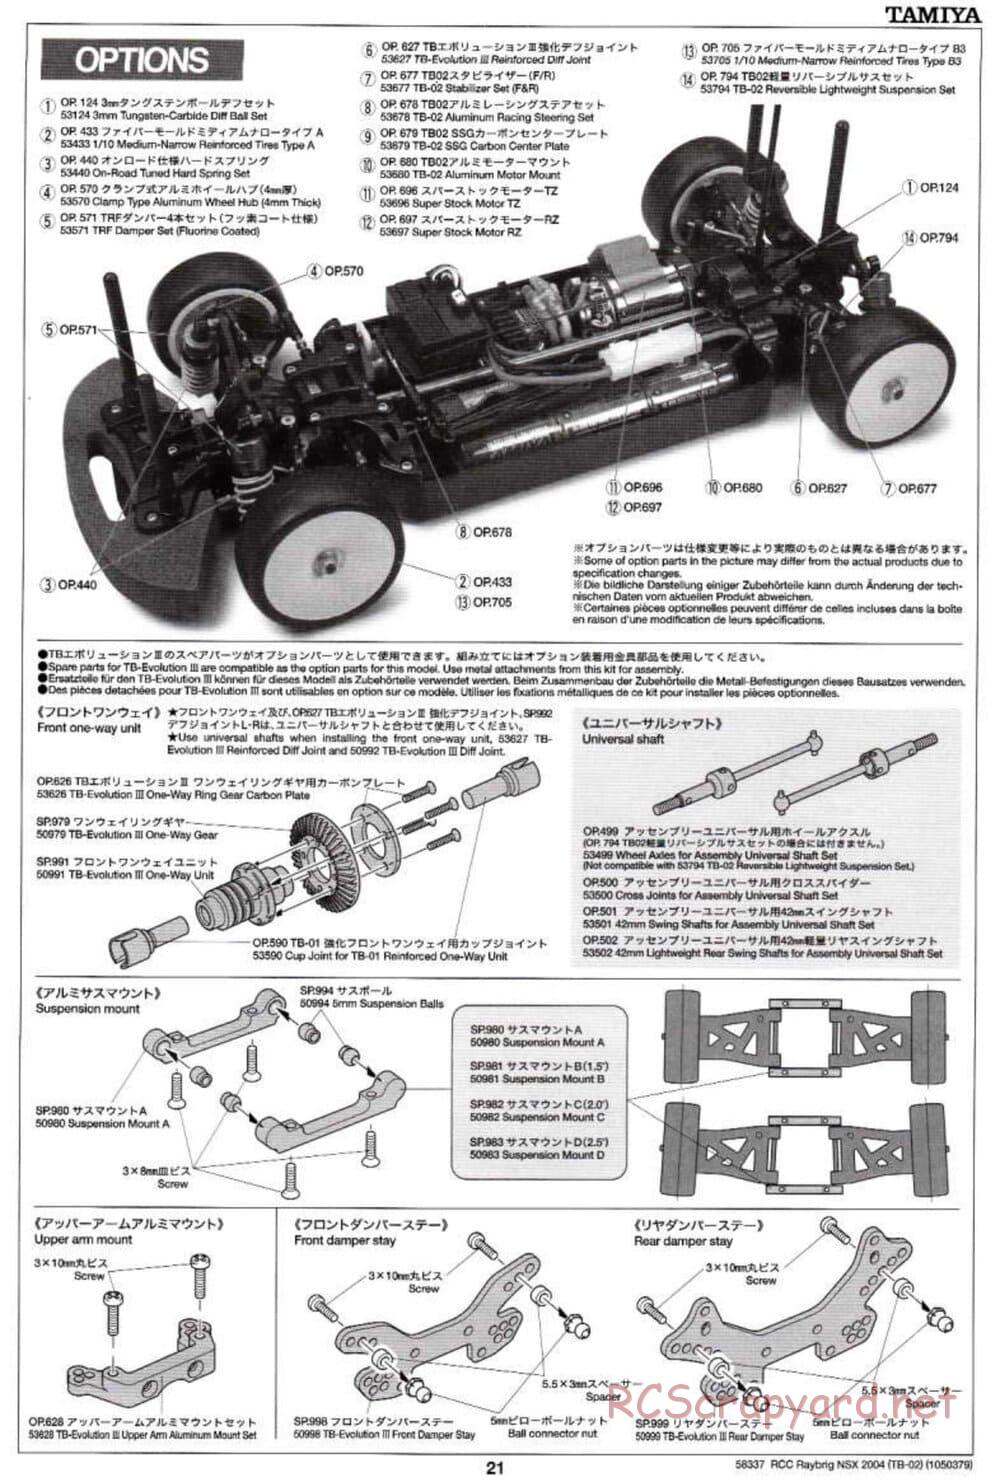 Tamiya - Raybrig NSX 2004 - TB-02 Chassis - Manual - Page 21